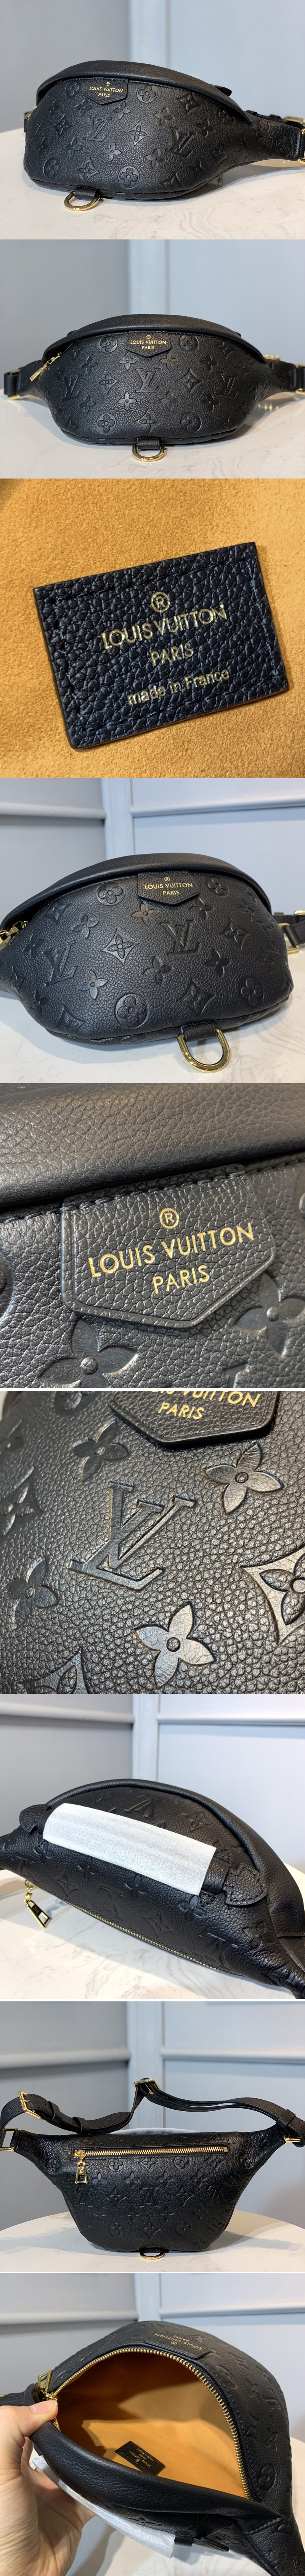 Replica Louis Vuitton M44812 LV Bumbag in Black Monogram Empreinte leather